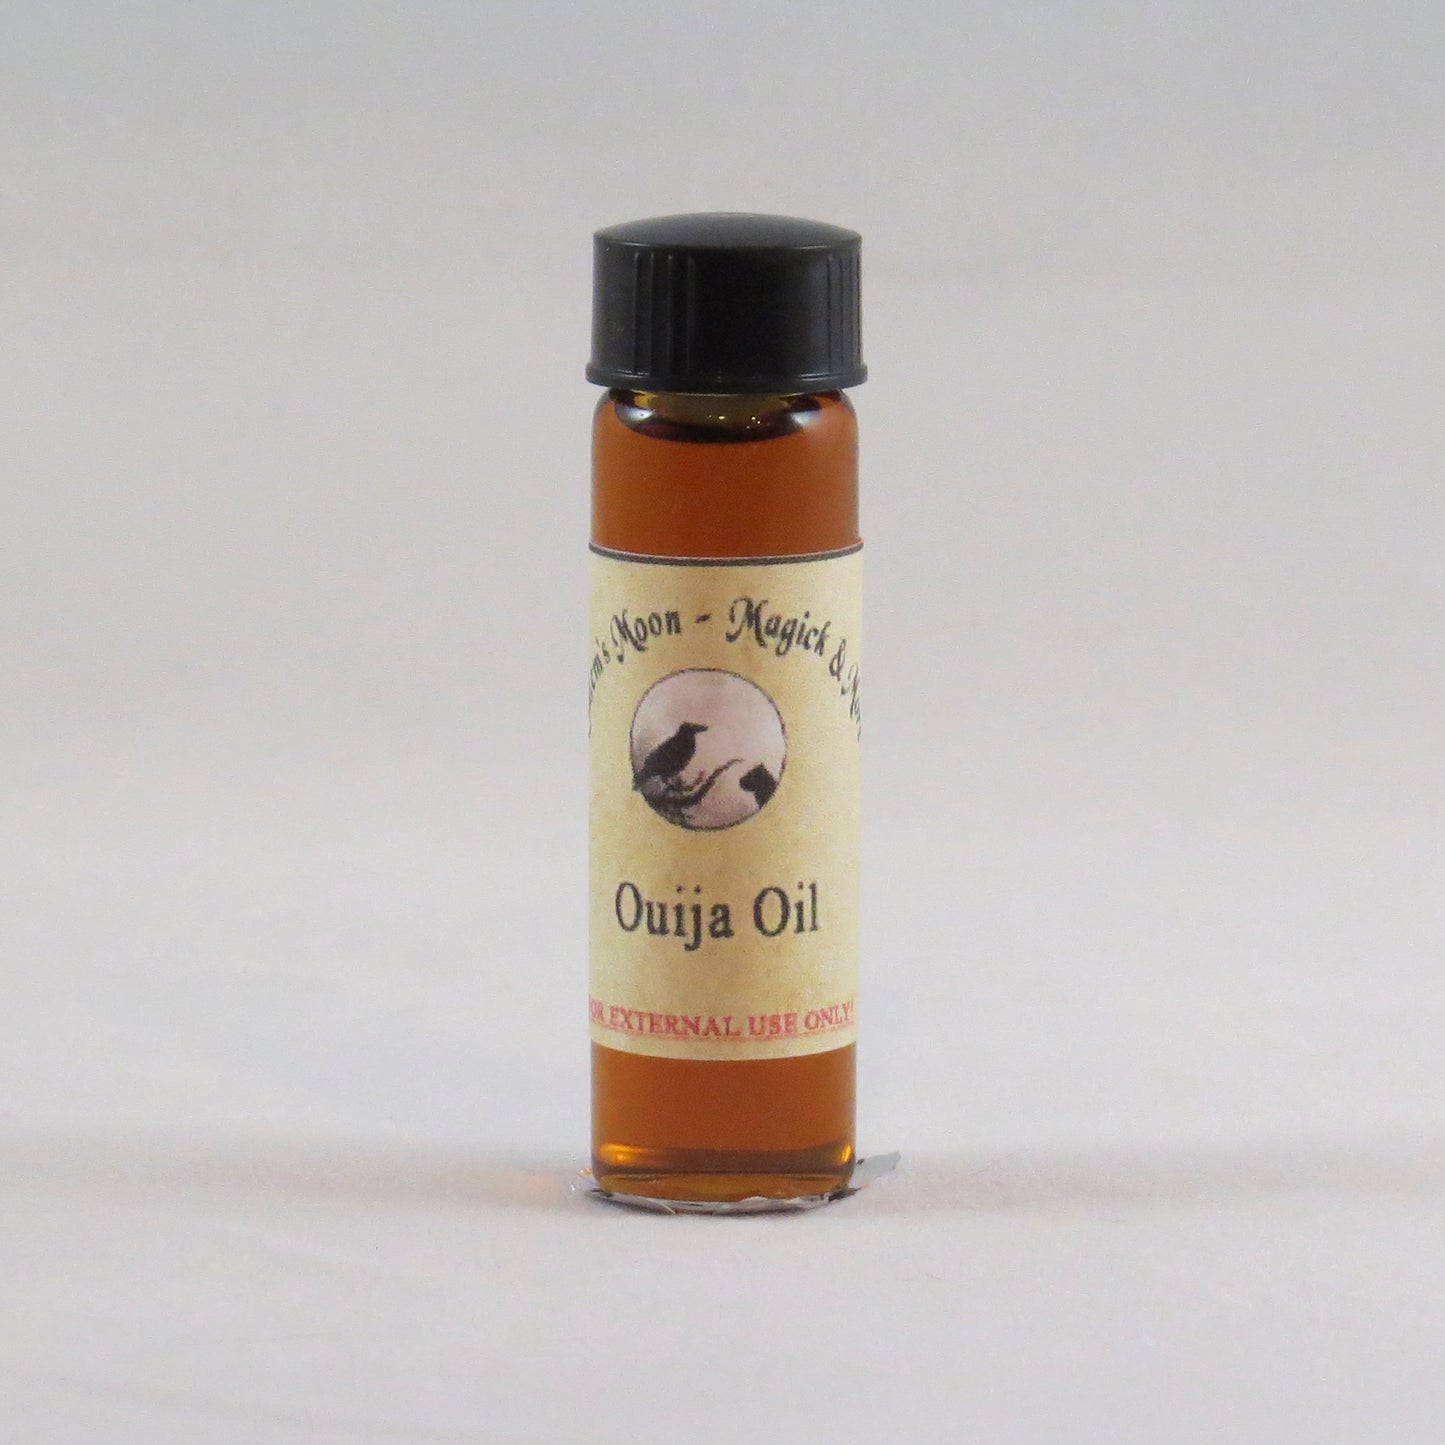 Ouija Oil